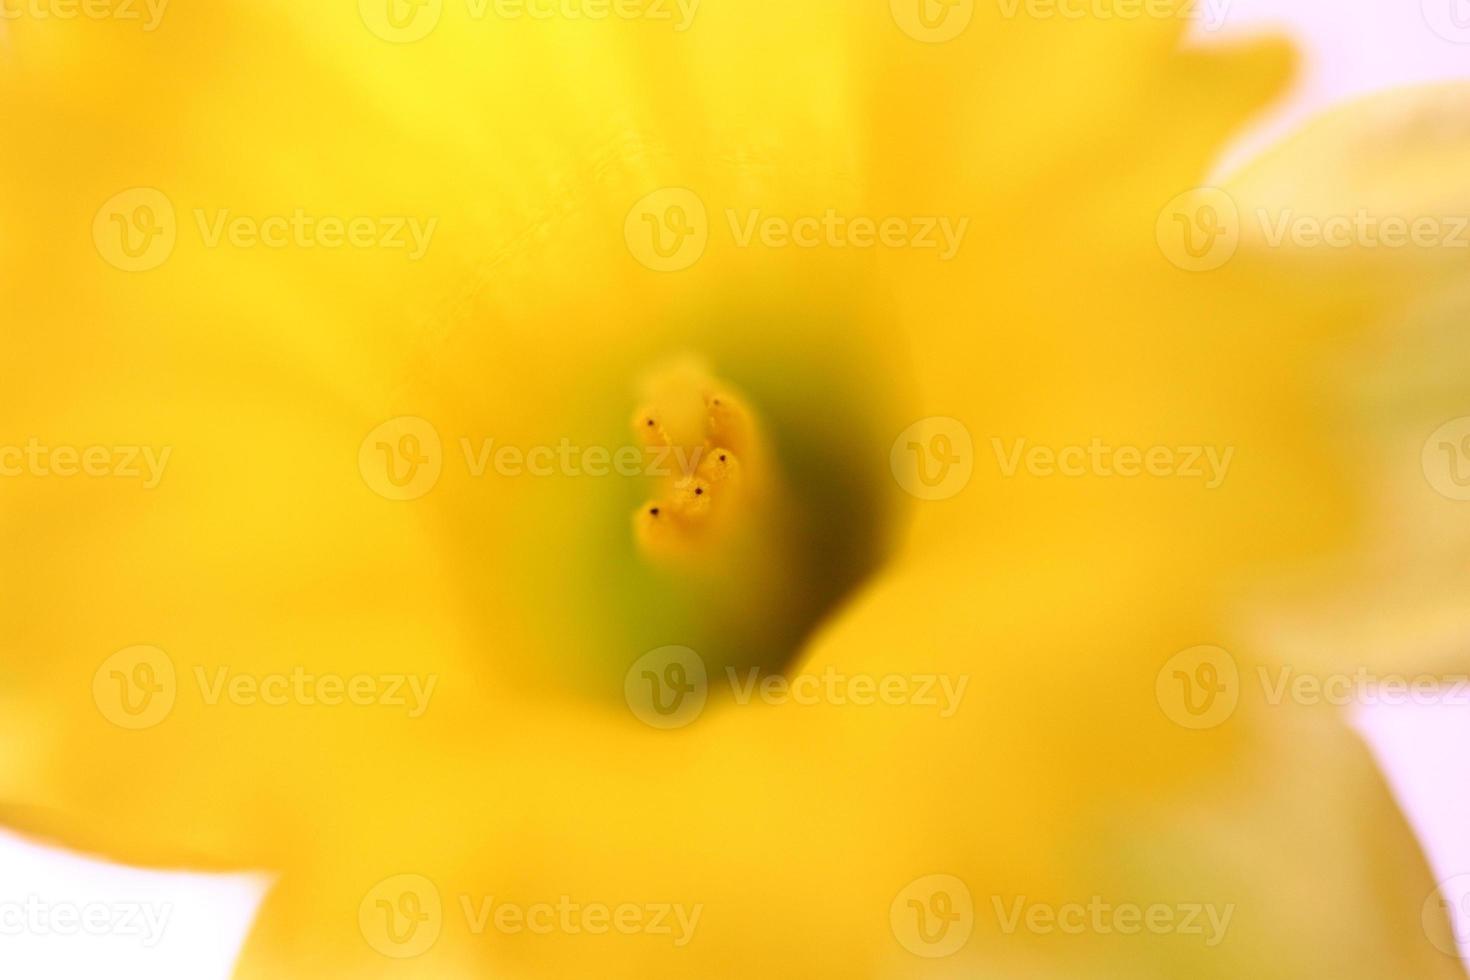 narciso giallo in primavera foto